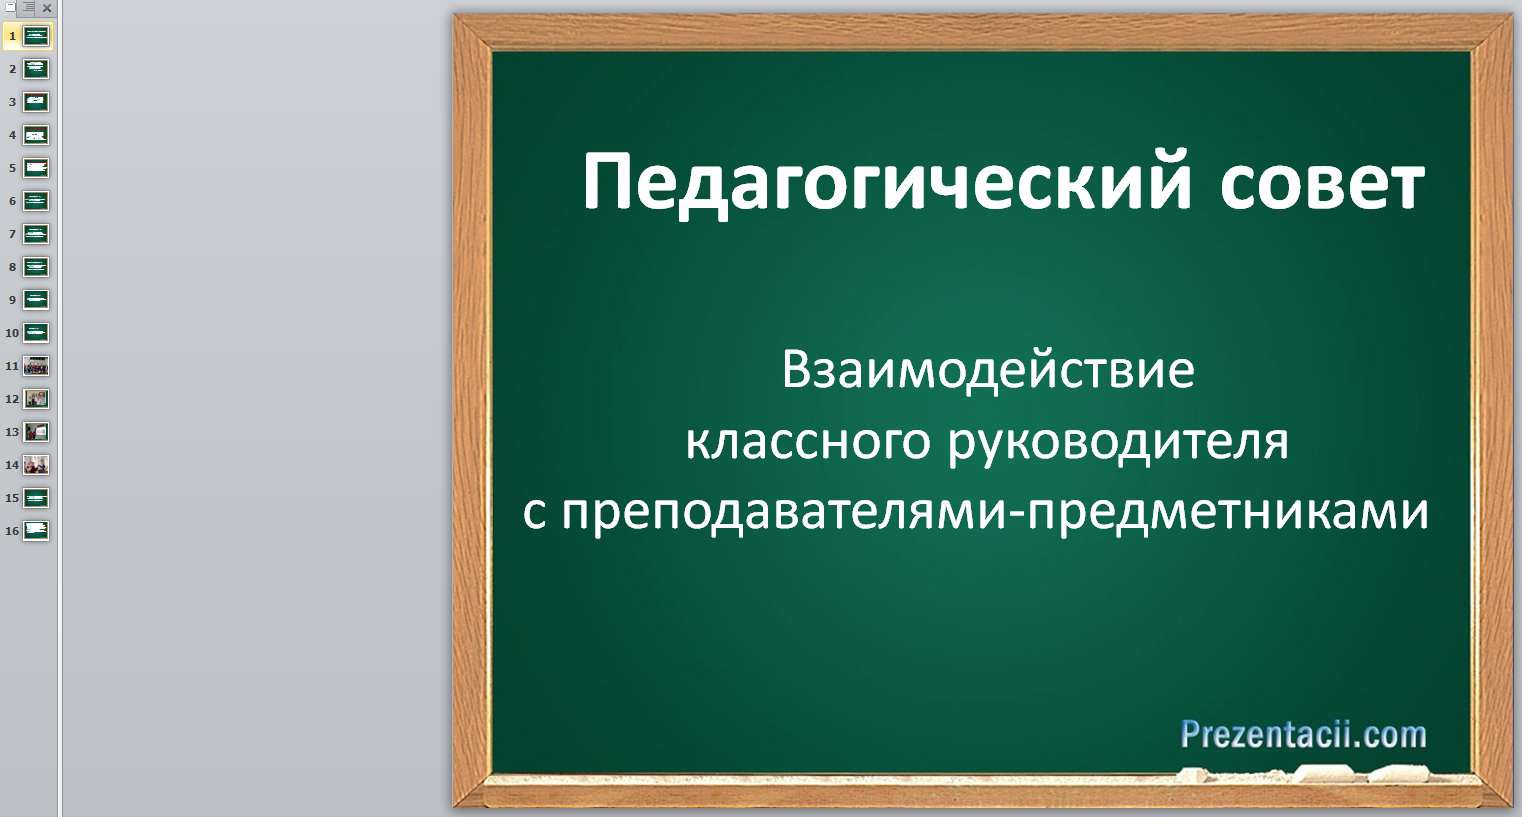 Взаимодействие_классного_руководителя_с_преподавателями-предметниками.png